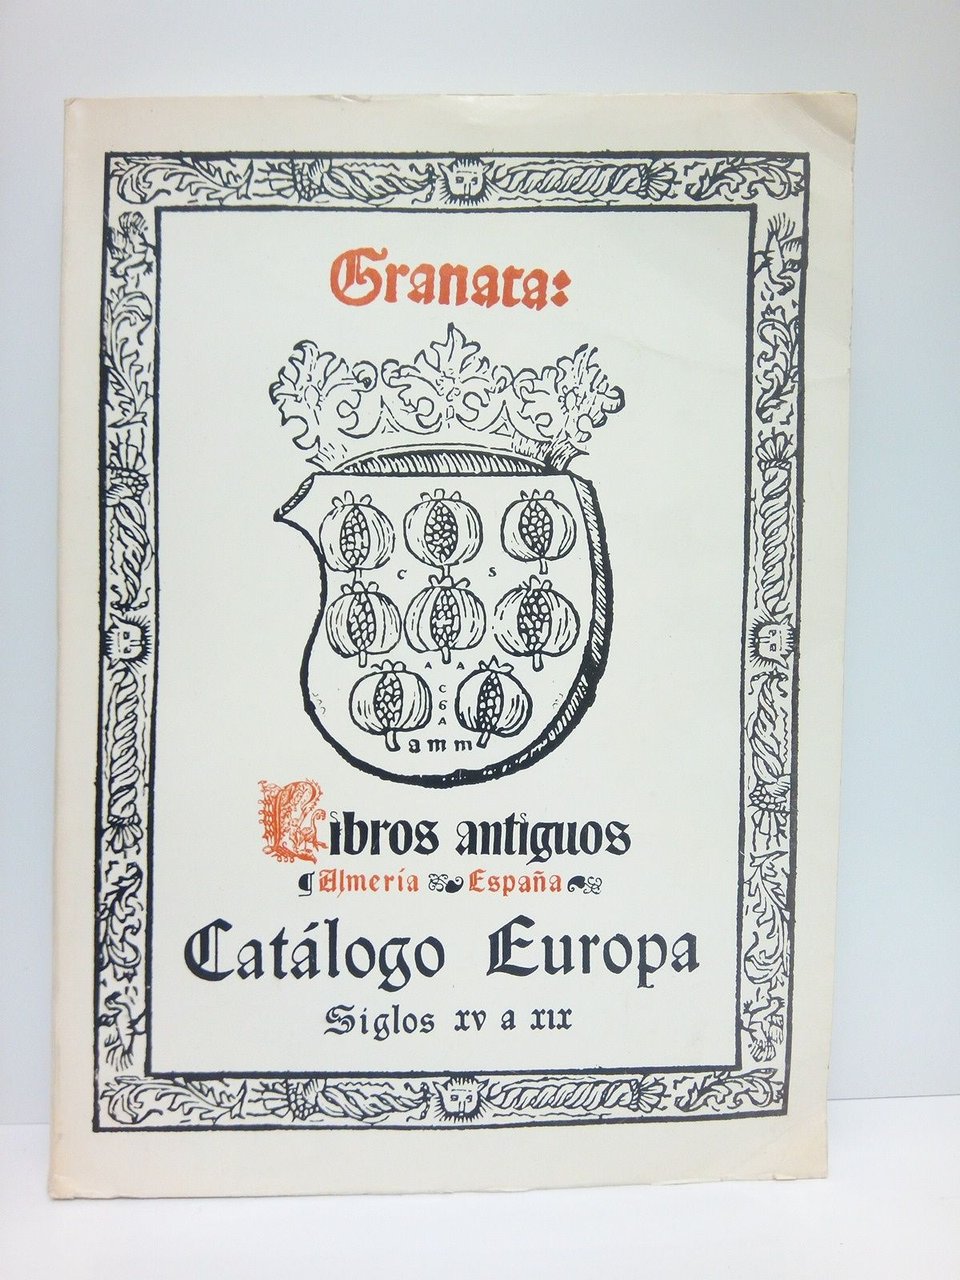 Catálogo Europa: Siglos XV a XIX